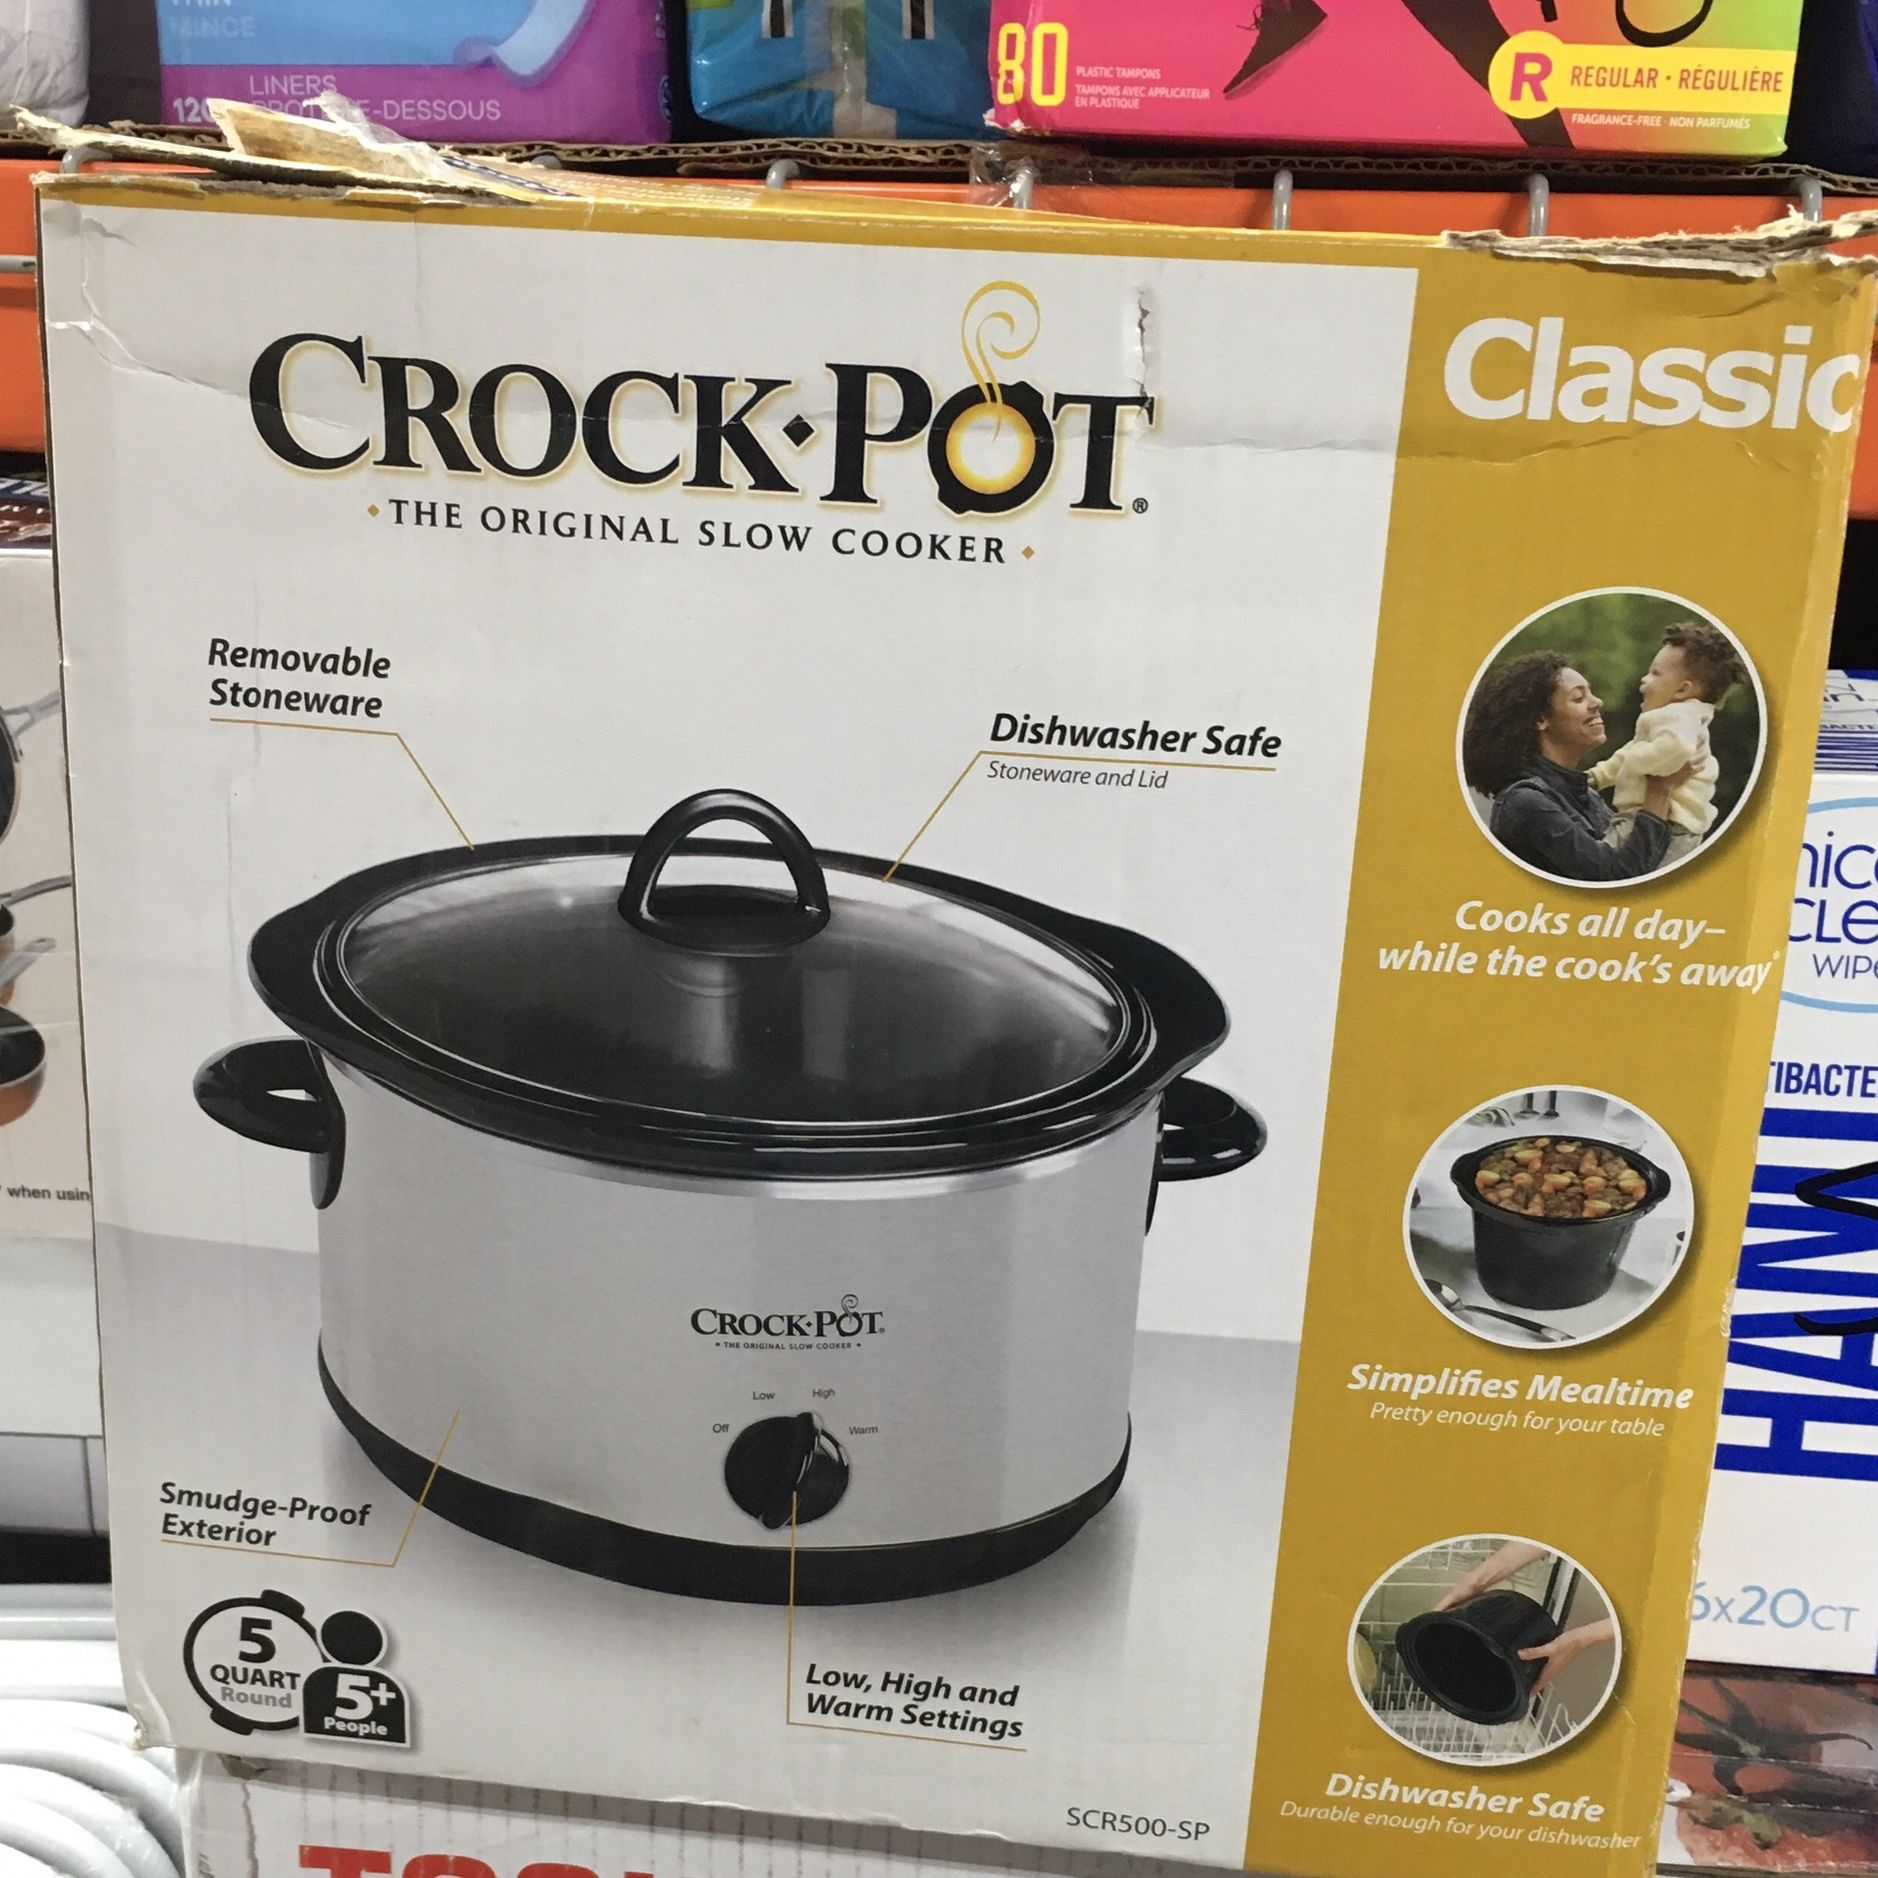 Crock Pot Slow Cooker, Classic, 4.5 Quart